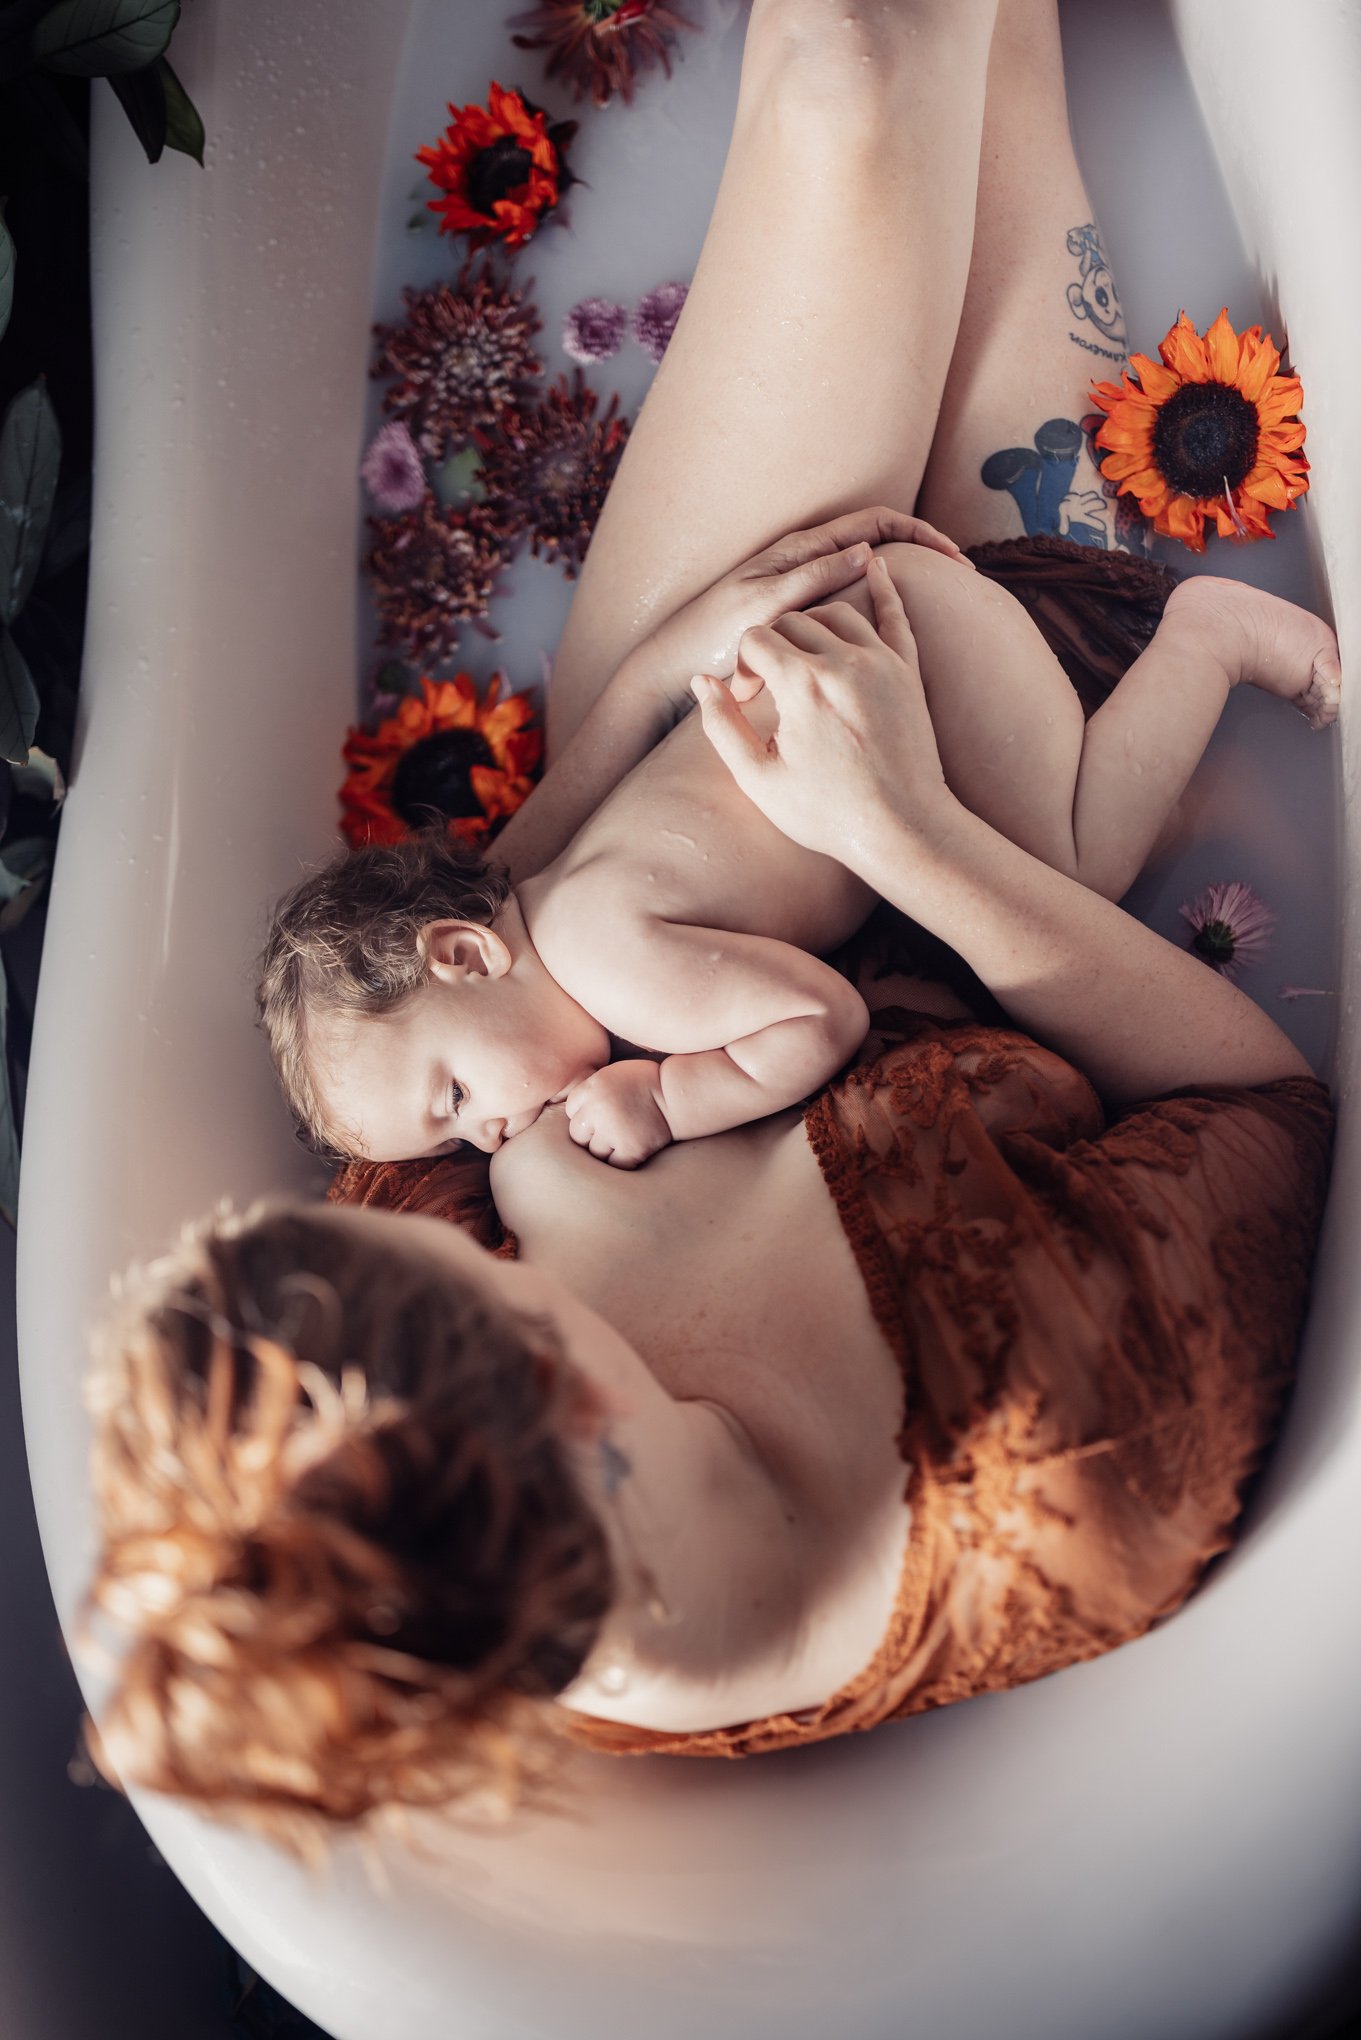  Milk Bath photos San Diego for maternity photos or nursing with Morning Owl Fine Art Photography San Diego 